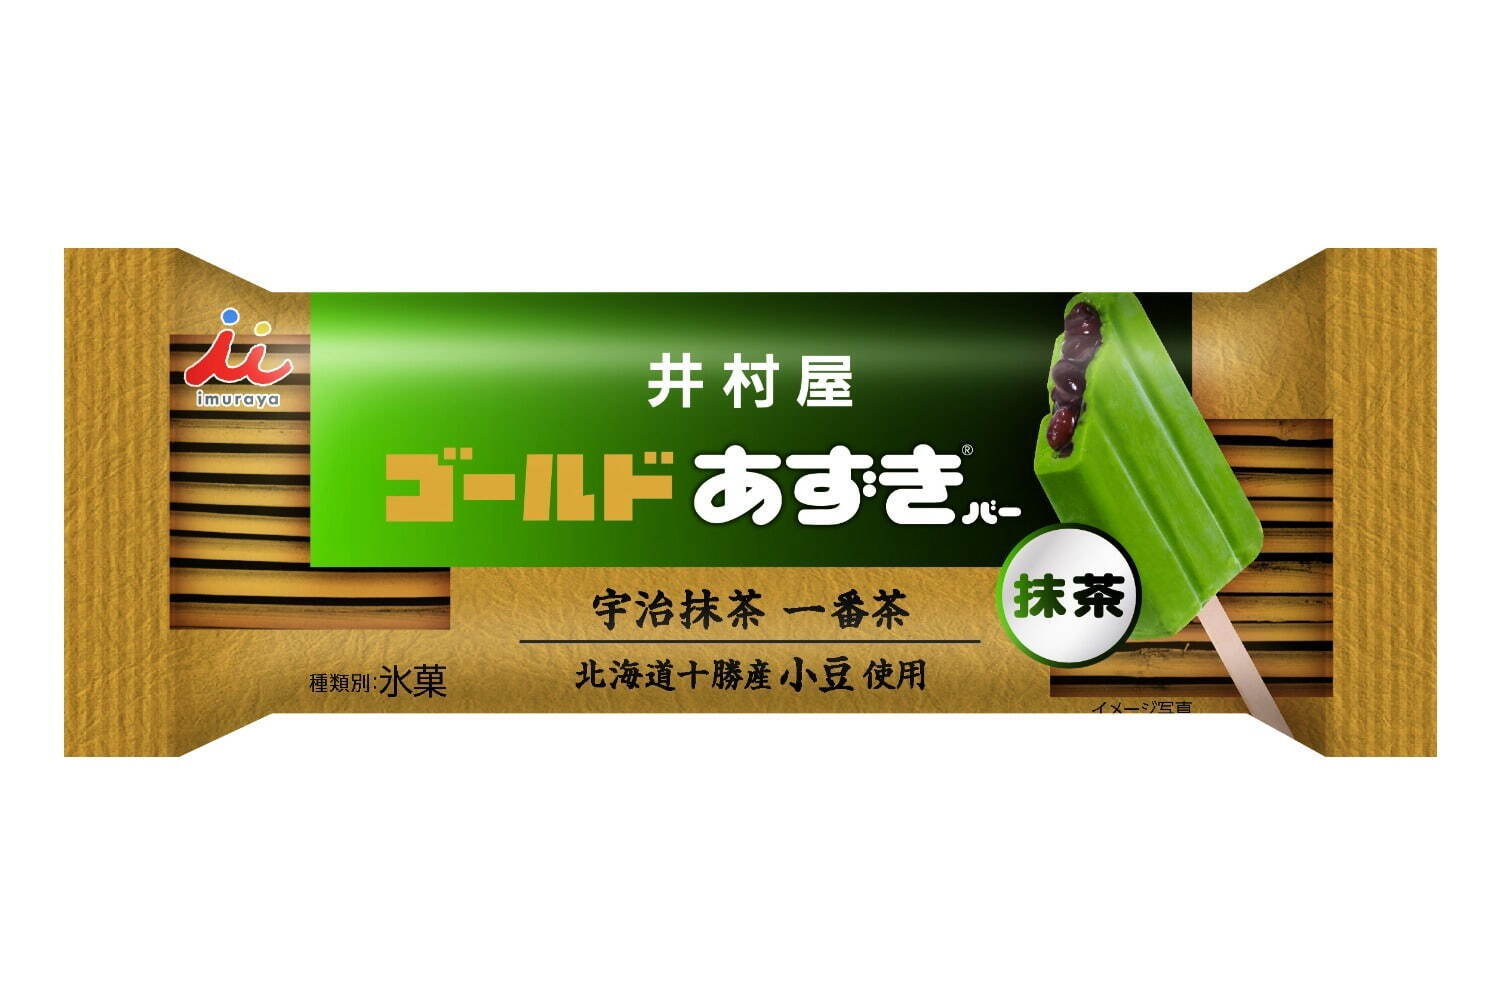 「ゴールドあずきバー 抹茶」172円